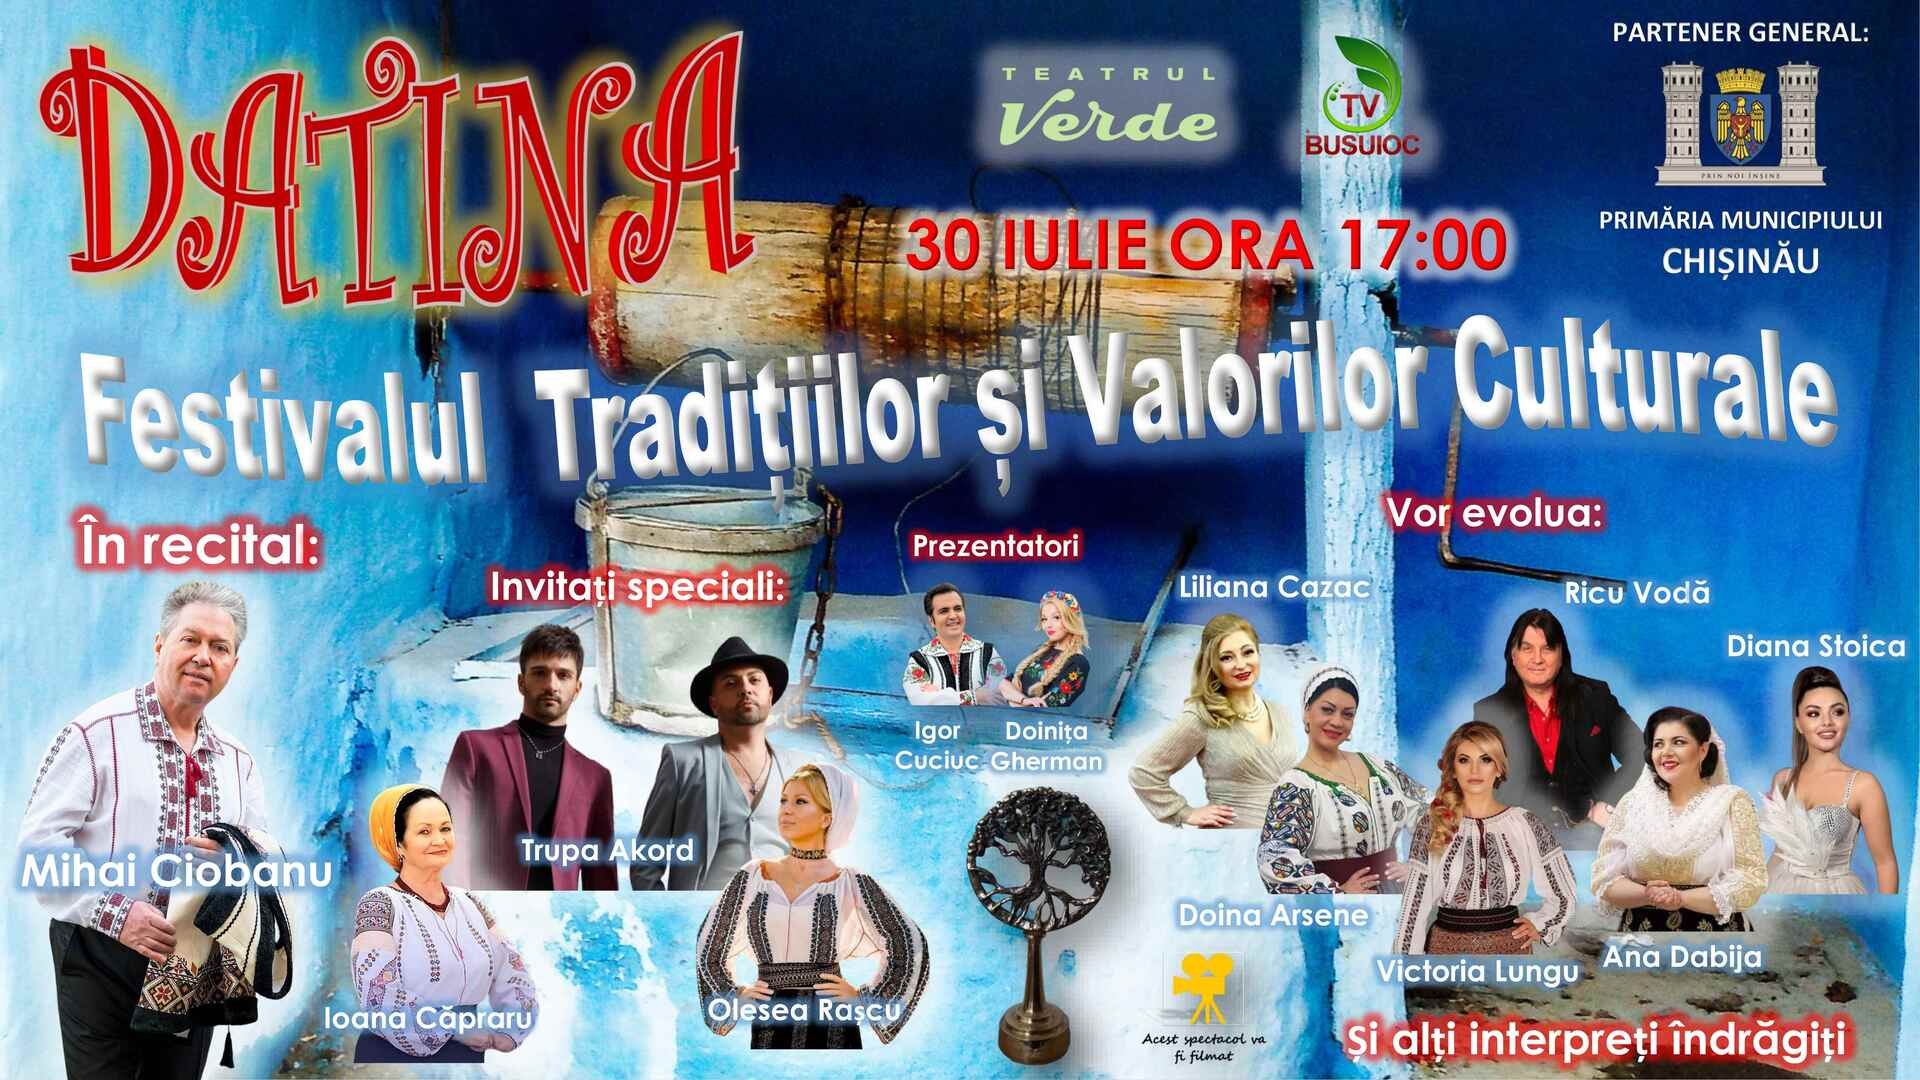 Datina - Festivalul Traditiilor si Valorilor Culturale